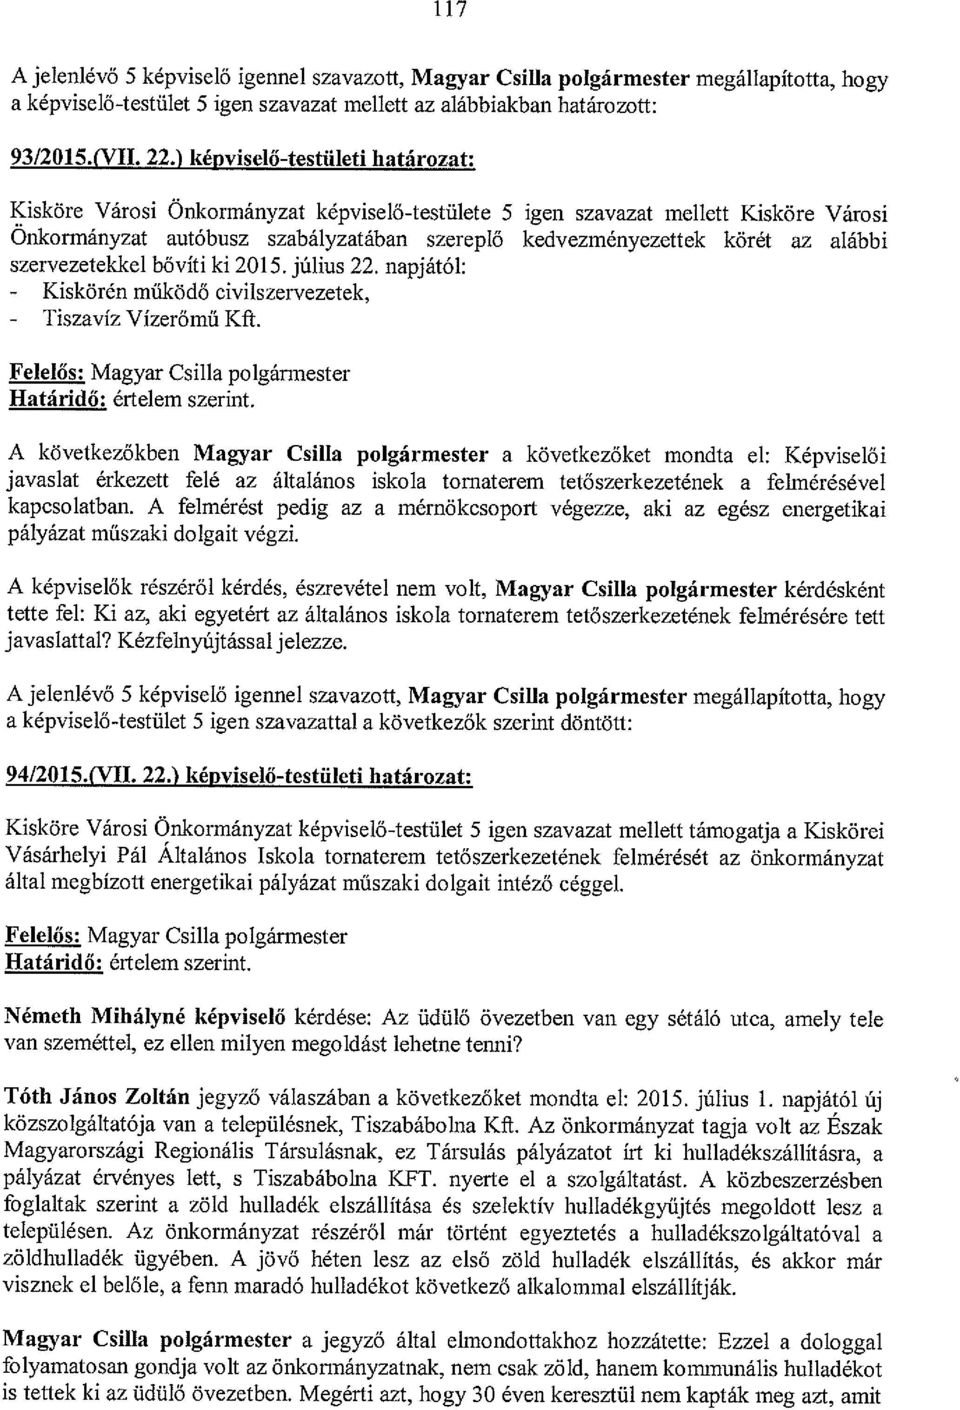 szervezetekkel bővíti ki 2015. július 22. napjától: - Kiskörén működő civilszervezetek, - Tiszavíz Vízerőmű KR.